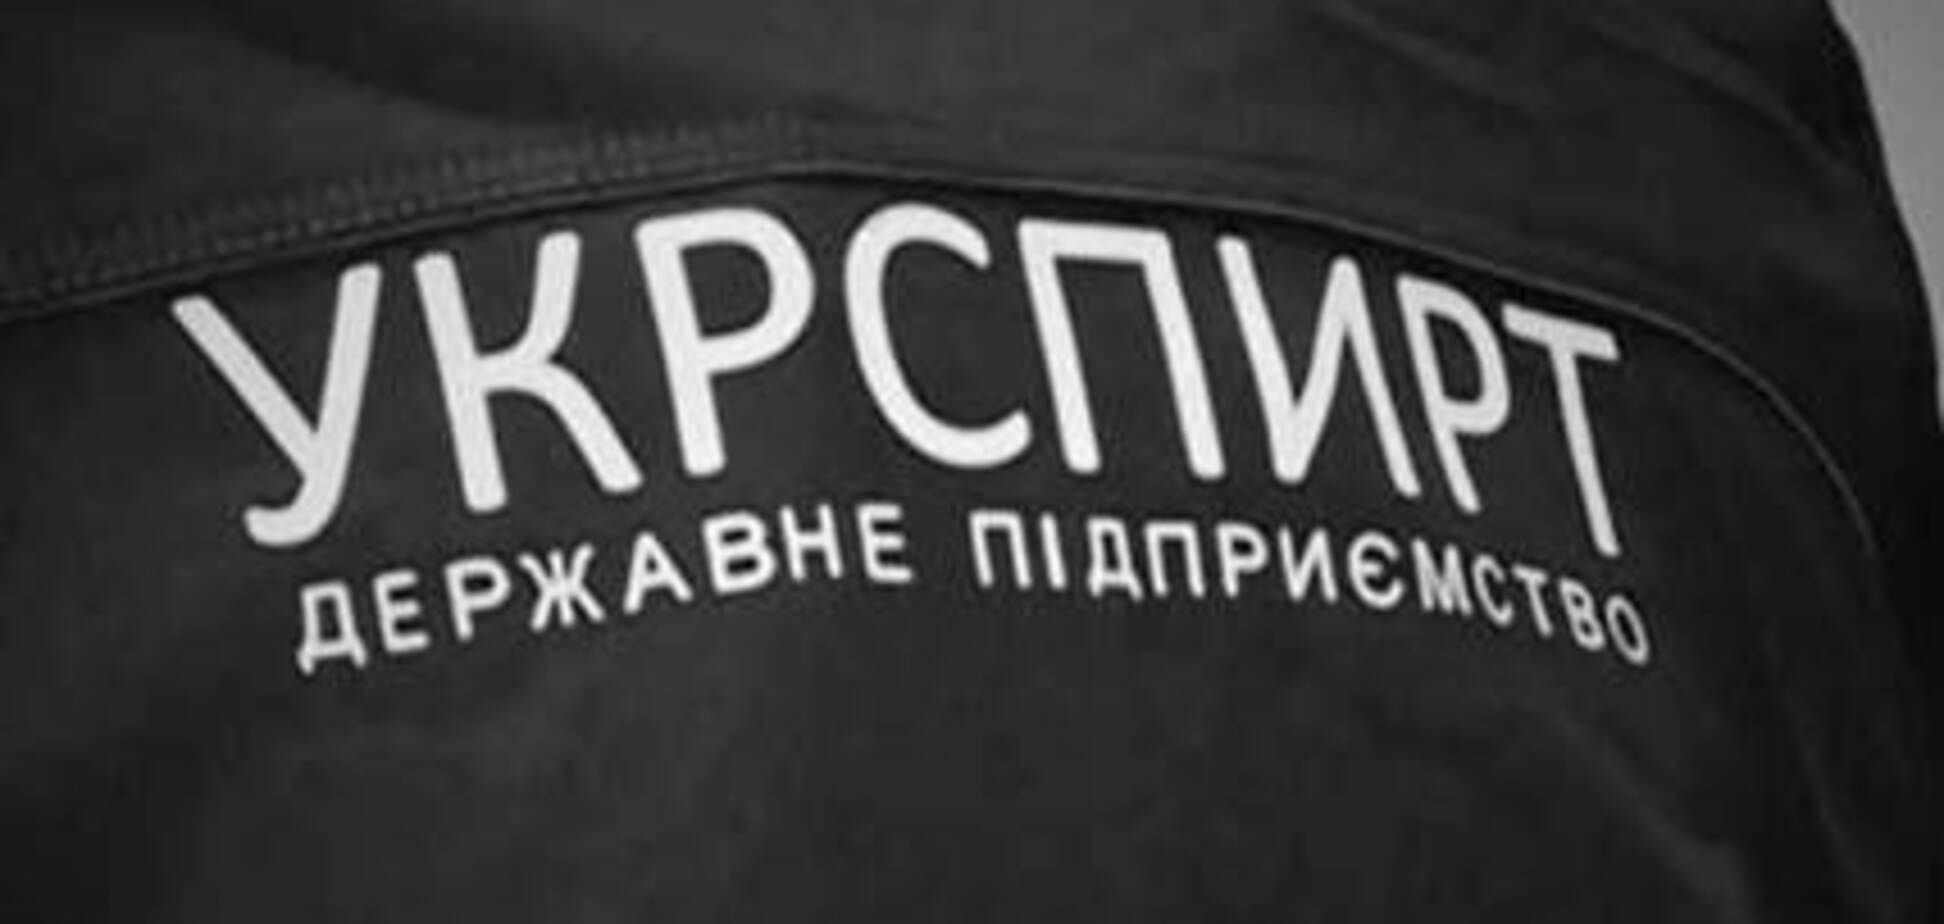 Производители водки обратились в Антимонопольный комитет с требованием разобраться с коррупцией в Укрспирте